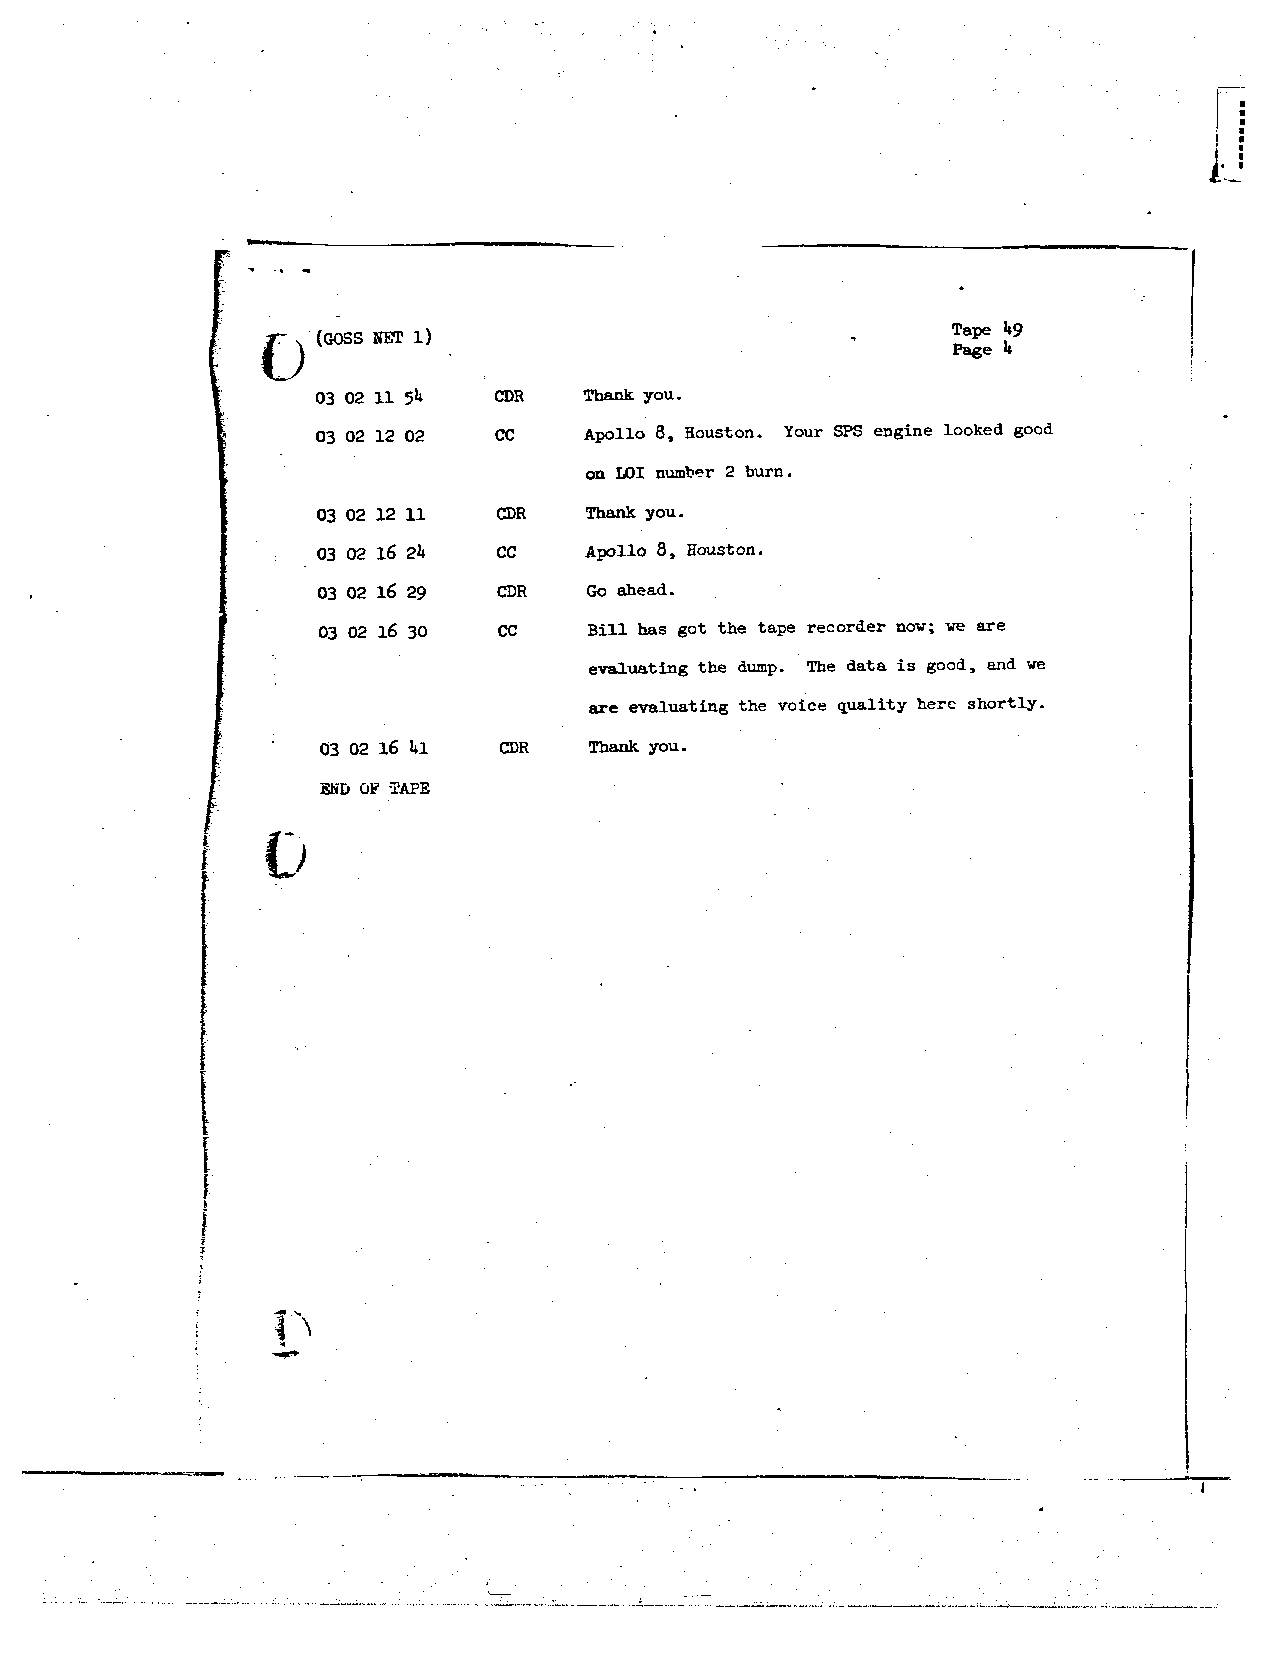 Page 392 of Apollo 8’s original transcript